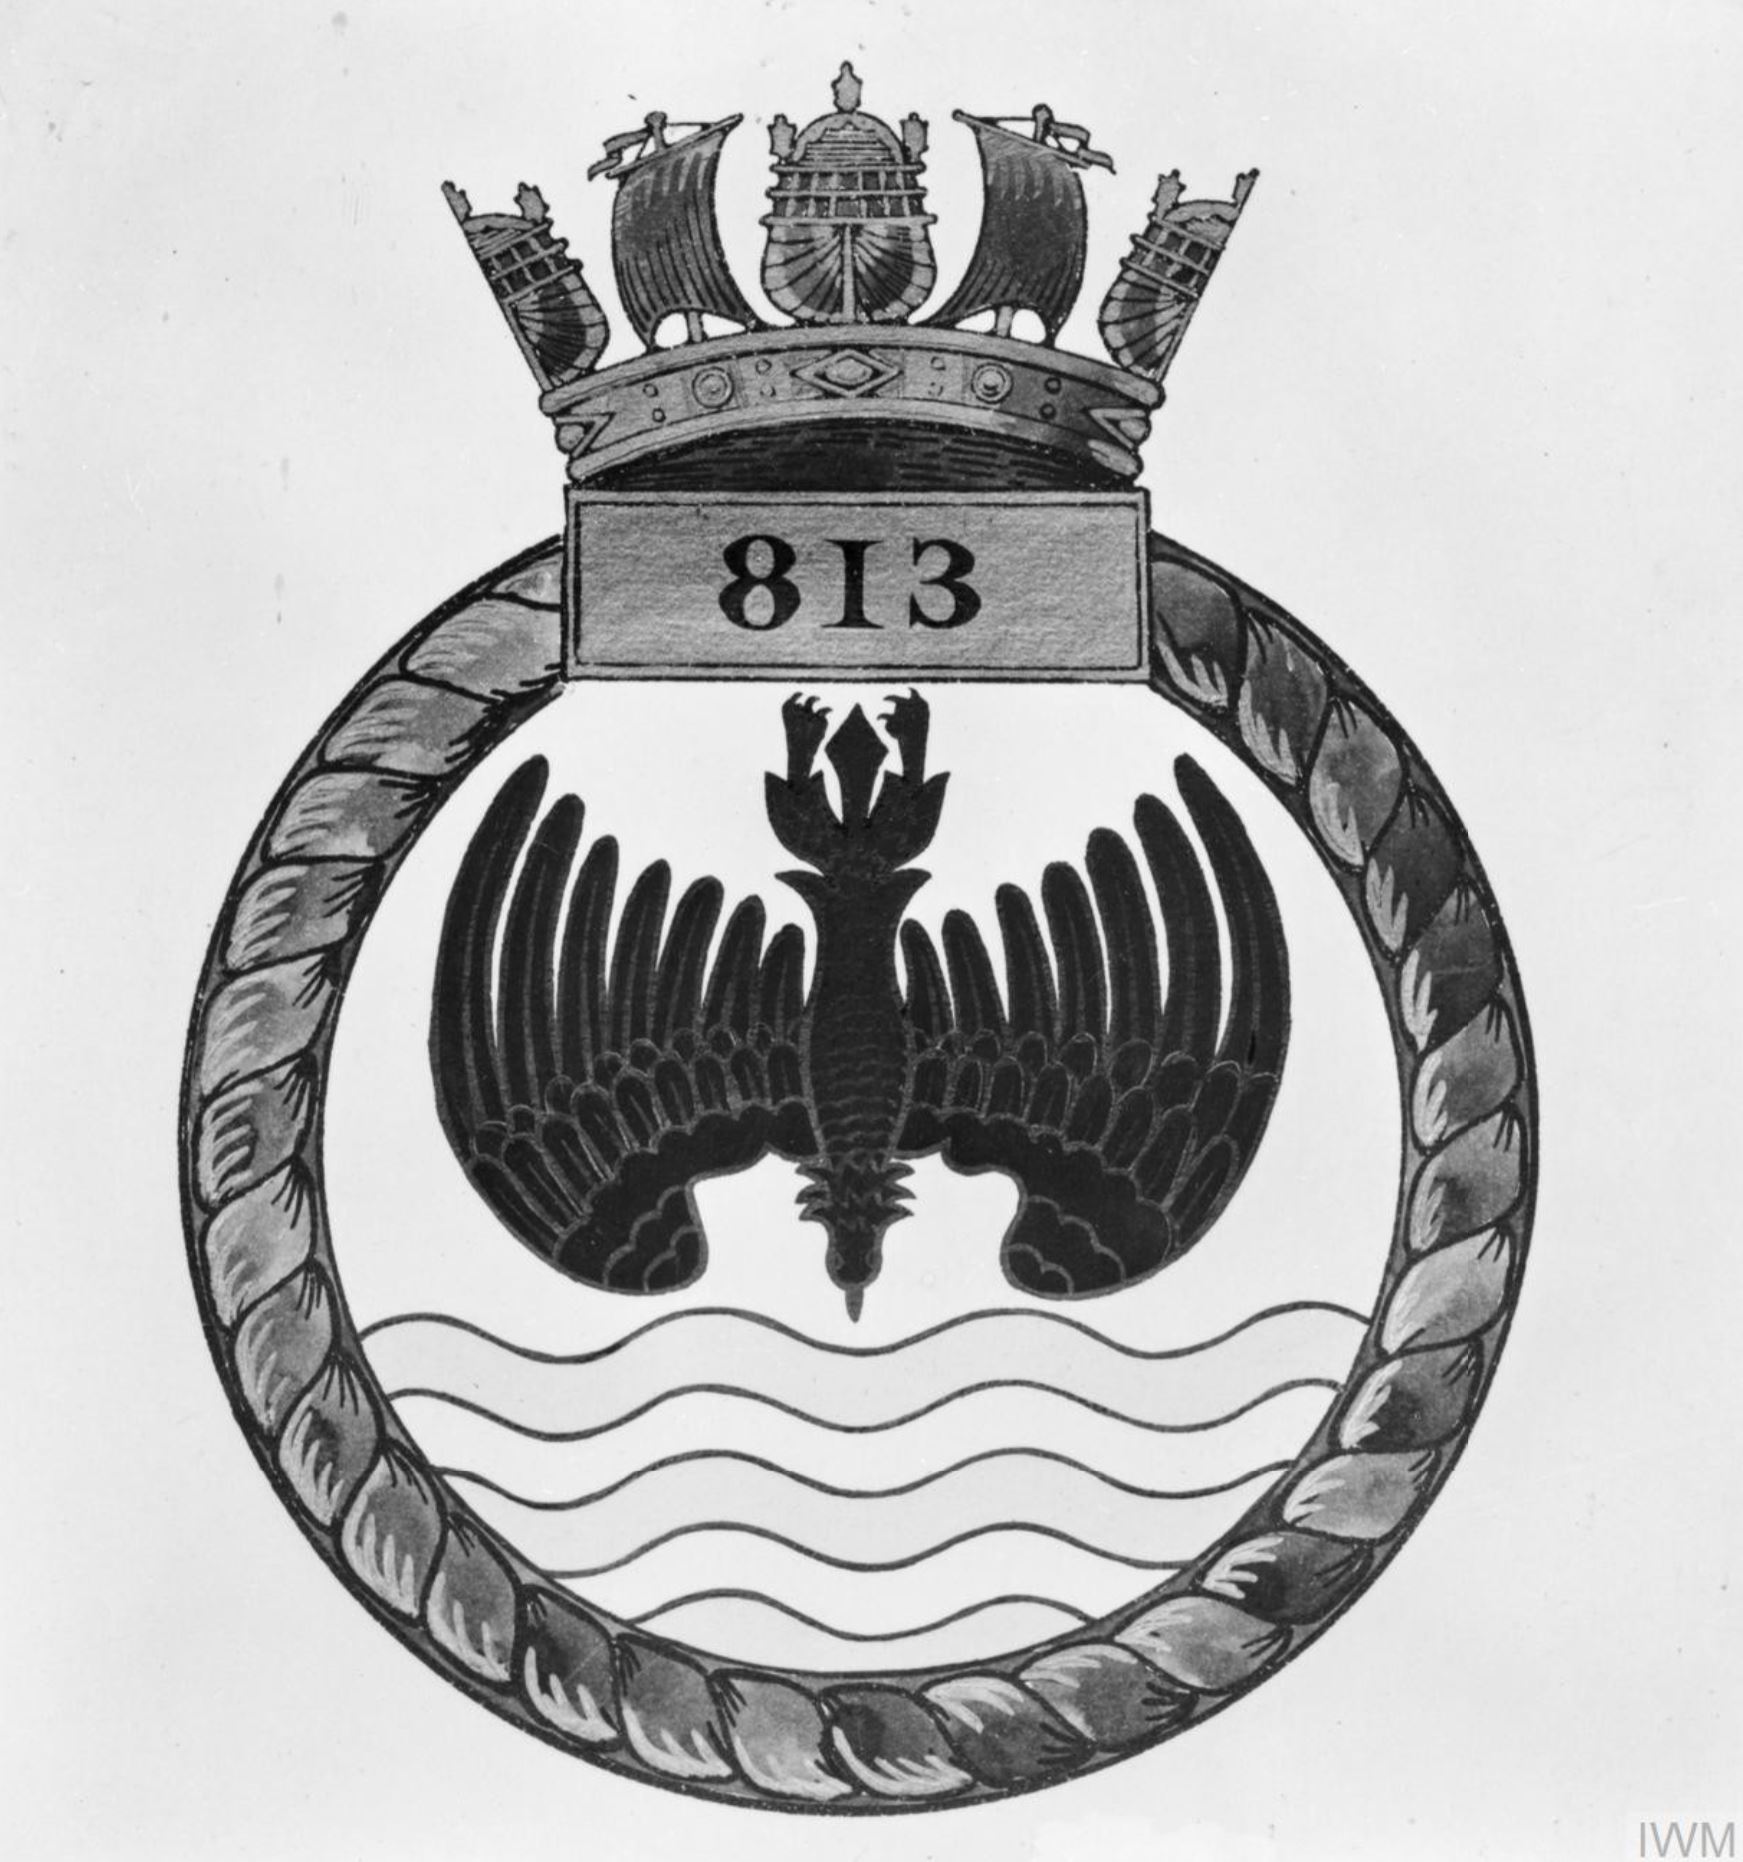 Fleet Air Arm crest of 813 Squadron IWM A31098